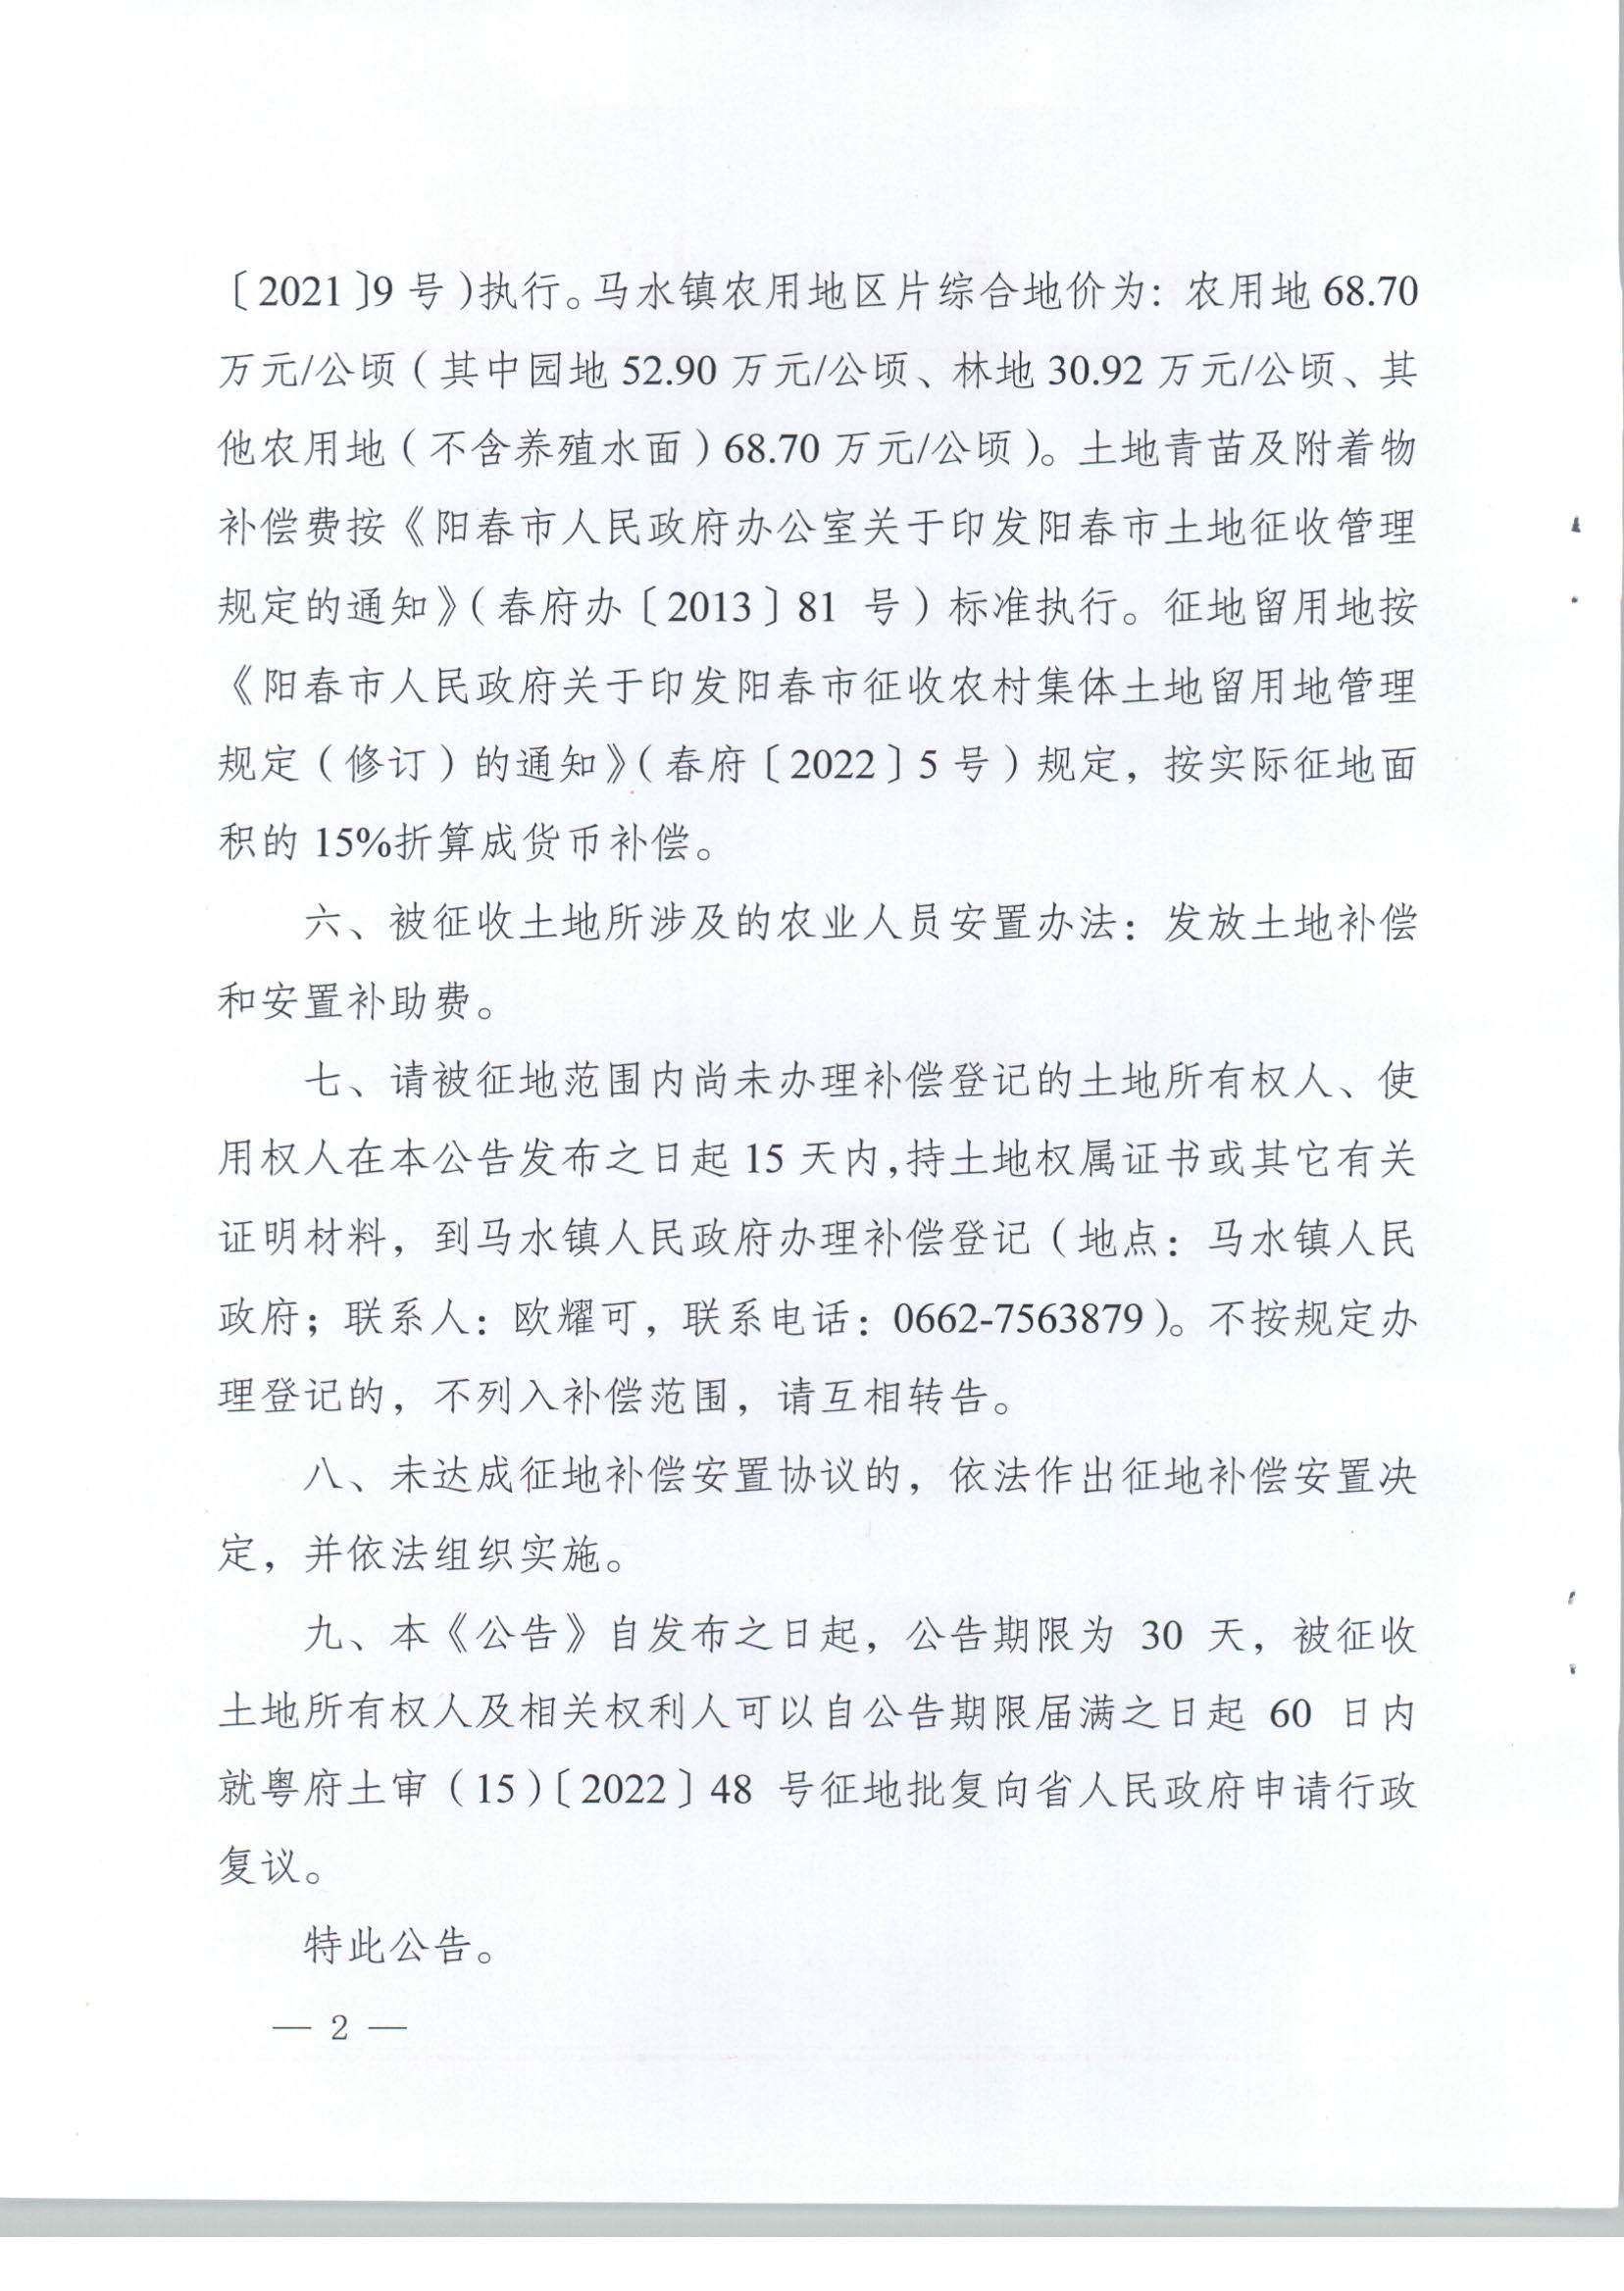 阳春市人民政府关于土地征收（收回）的公告（2021年度第十五批次）_页面_2.jpg